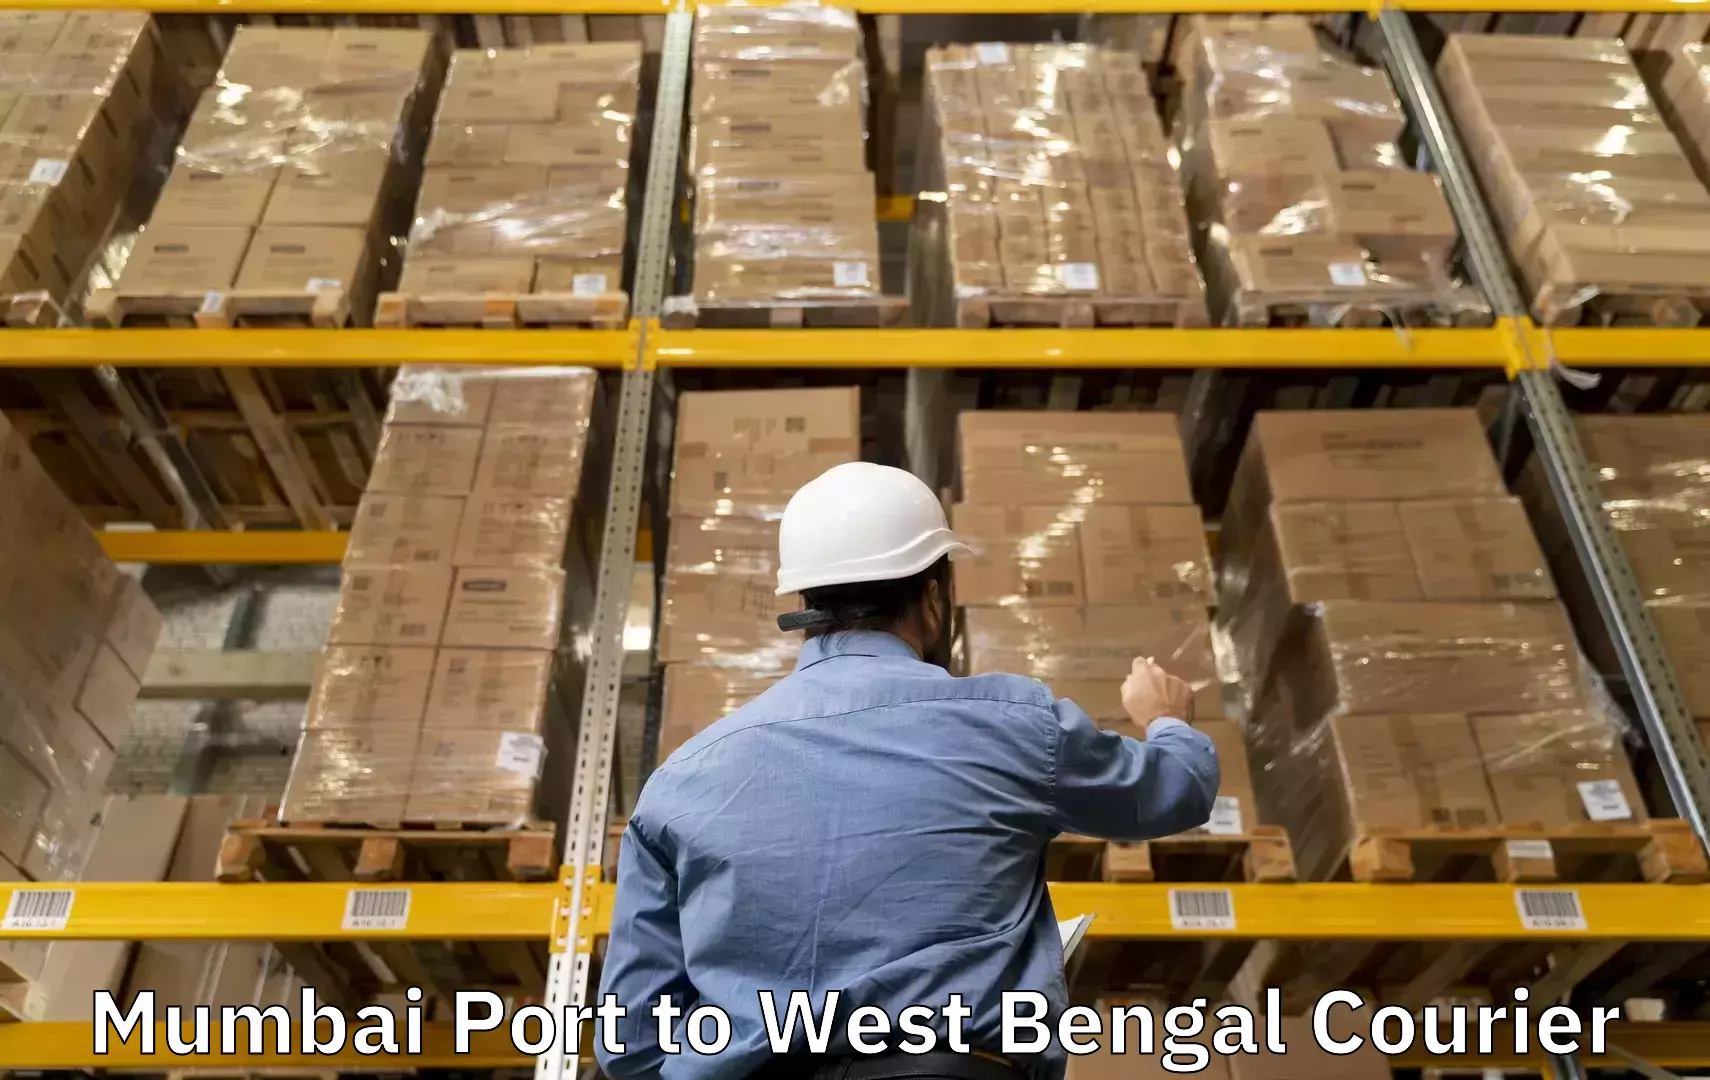 Luggage shipping consultation in Mumbai Port to The University of Burdwan Barddhaman